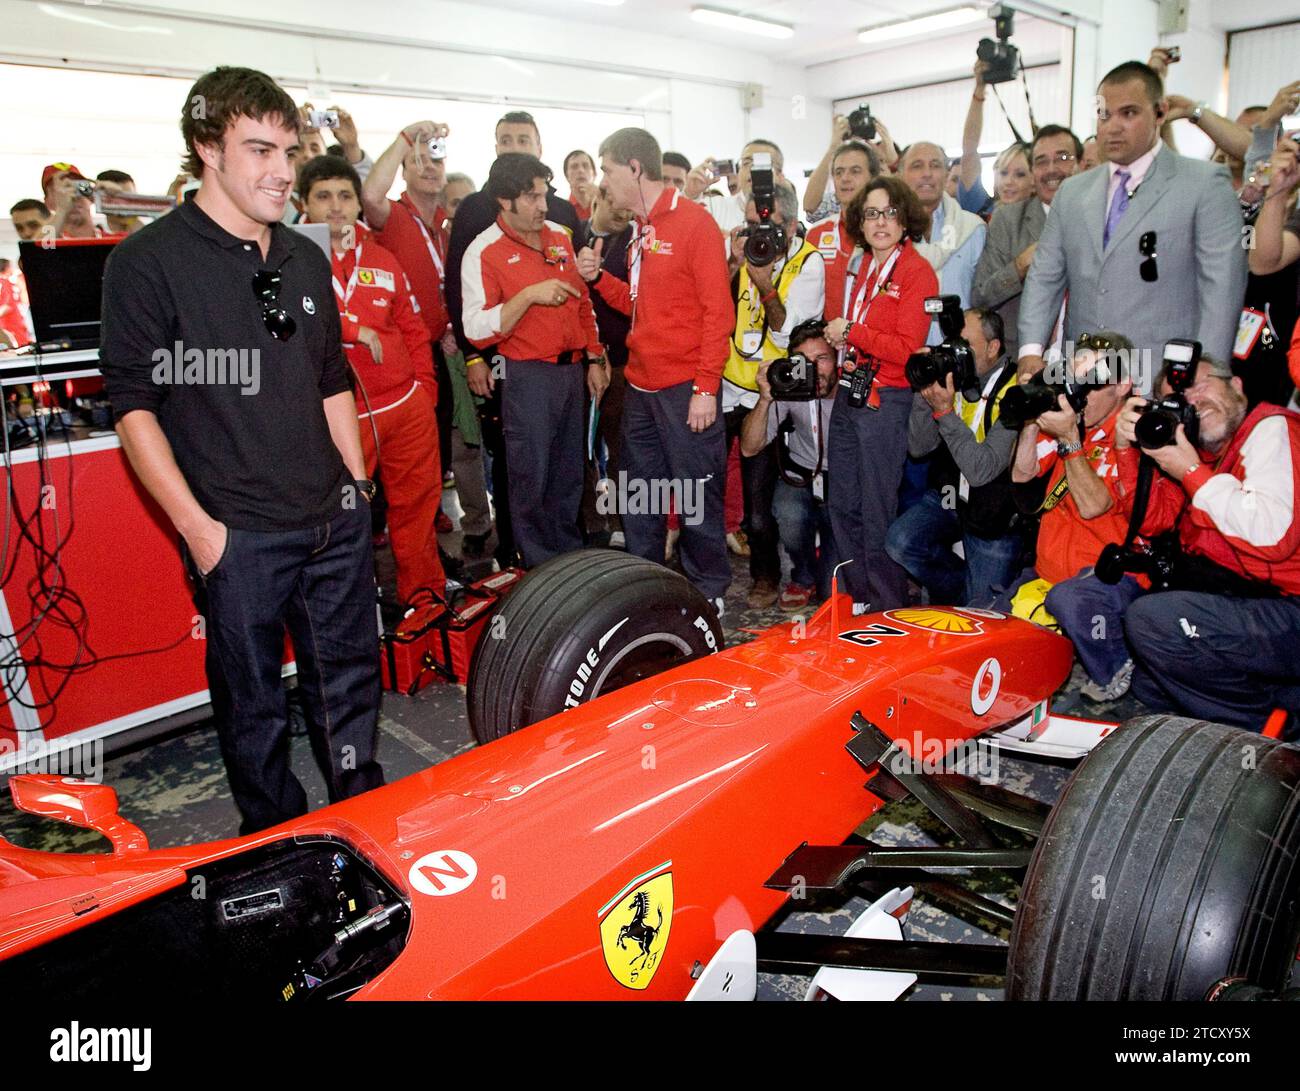 Valencia, 15/11/2009. Fernando Alonso era a Cheste nella Ferrari World Series. Crediti: Album / Archivo ABC / Mikel Ponce Foto Stock